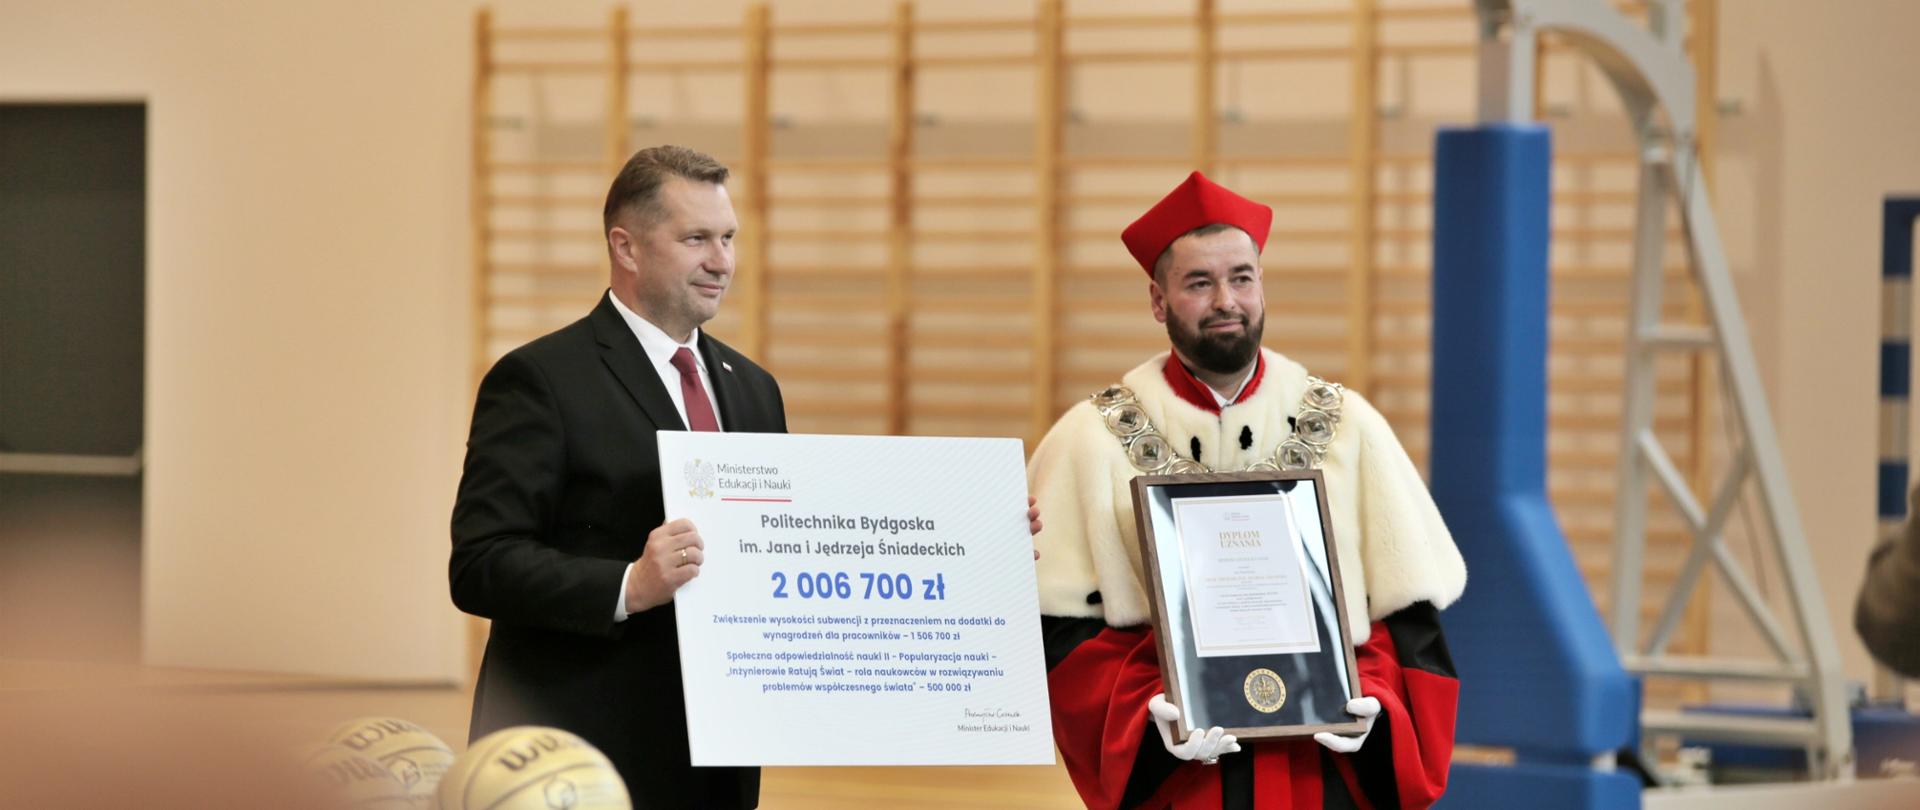 Na środku sali gimnastycznej stoi minister Czarnek, w rękach trzyma wielki symboliczny czek z napisem 2 006 700 zł, obok niego stoi mężczyzna w czerwonym ceremonialnym stroju z gronostajowym kołnierzem i trzyma oprawiony w ramki dokument.